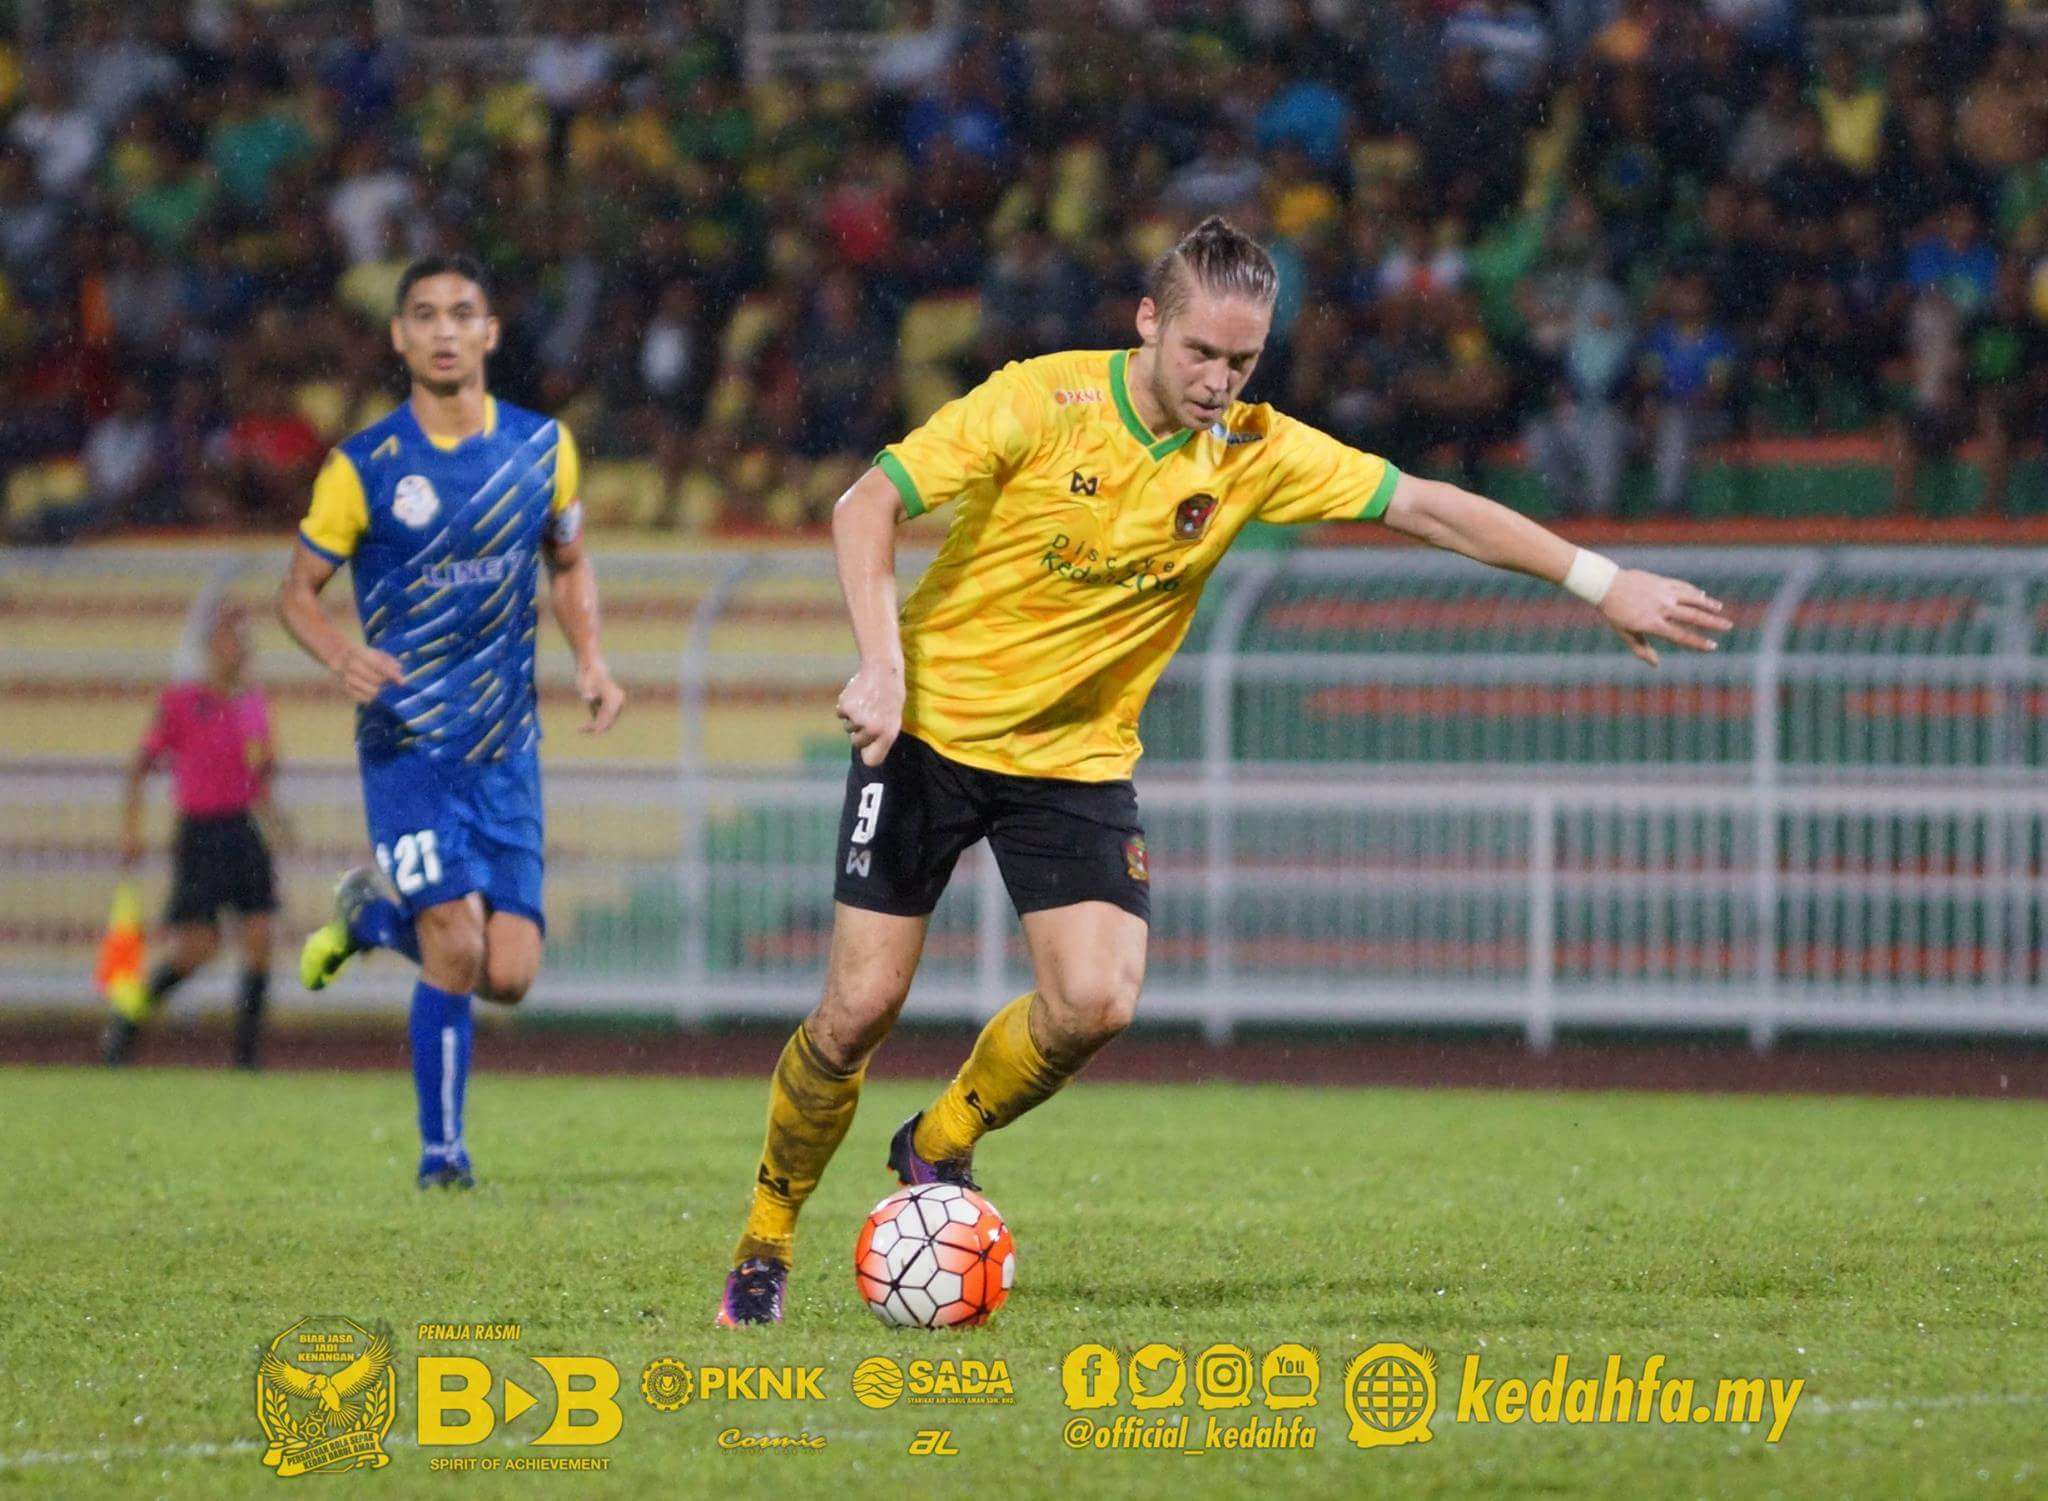 Ken Ilsø Larsen playing in a pre-season friendly for Kedah 4/1/2017